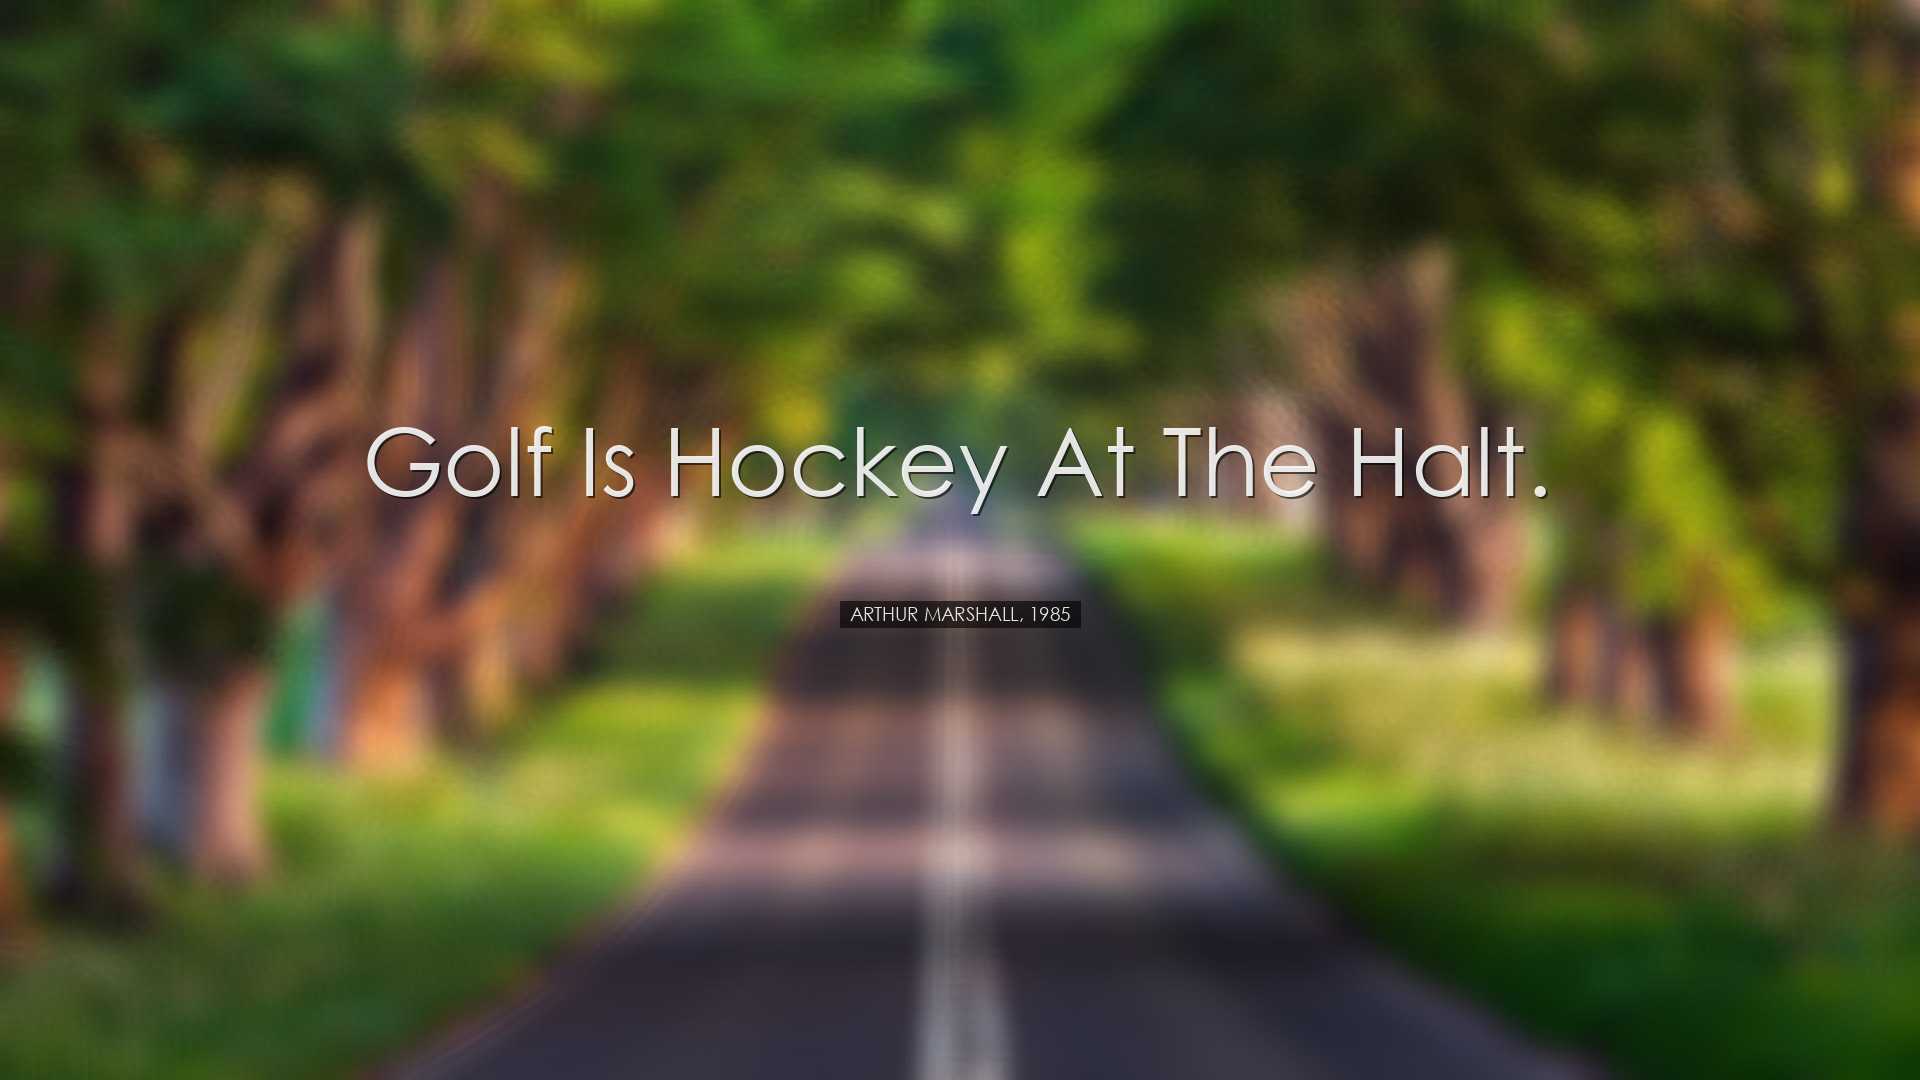 Golf is hockey at the halt. - Arthur Marshall, 1985